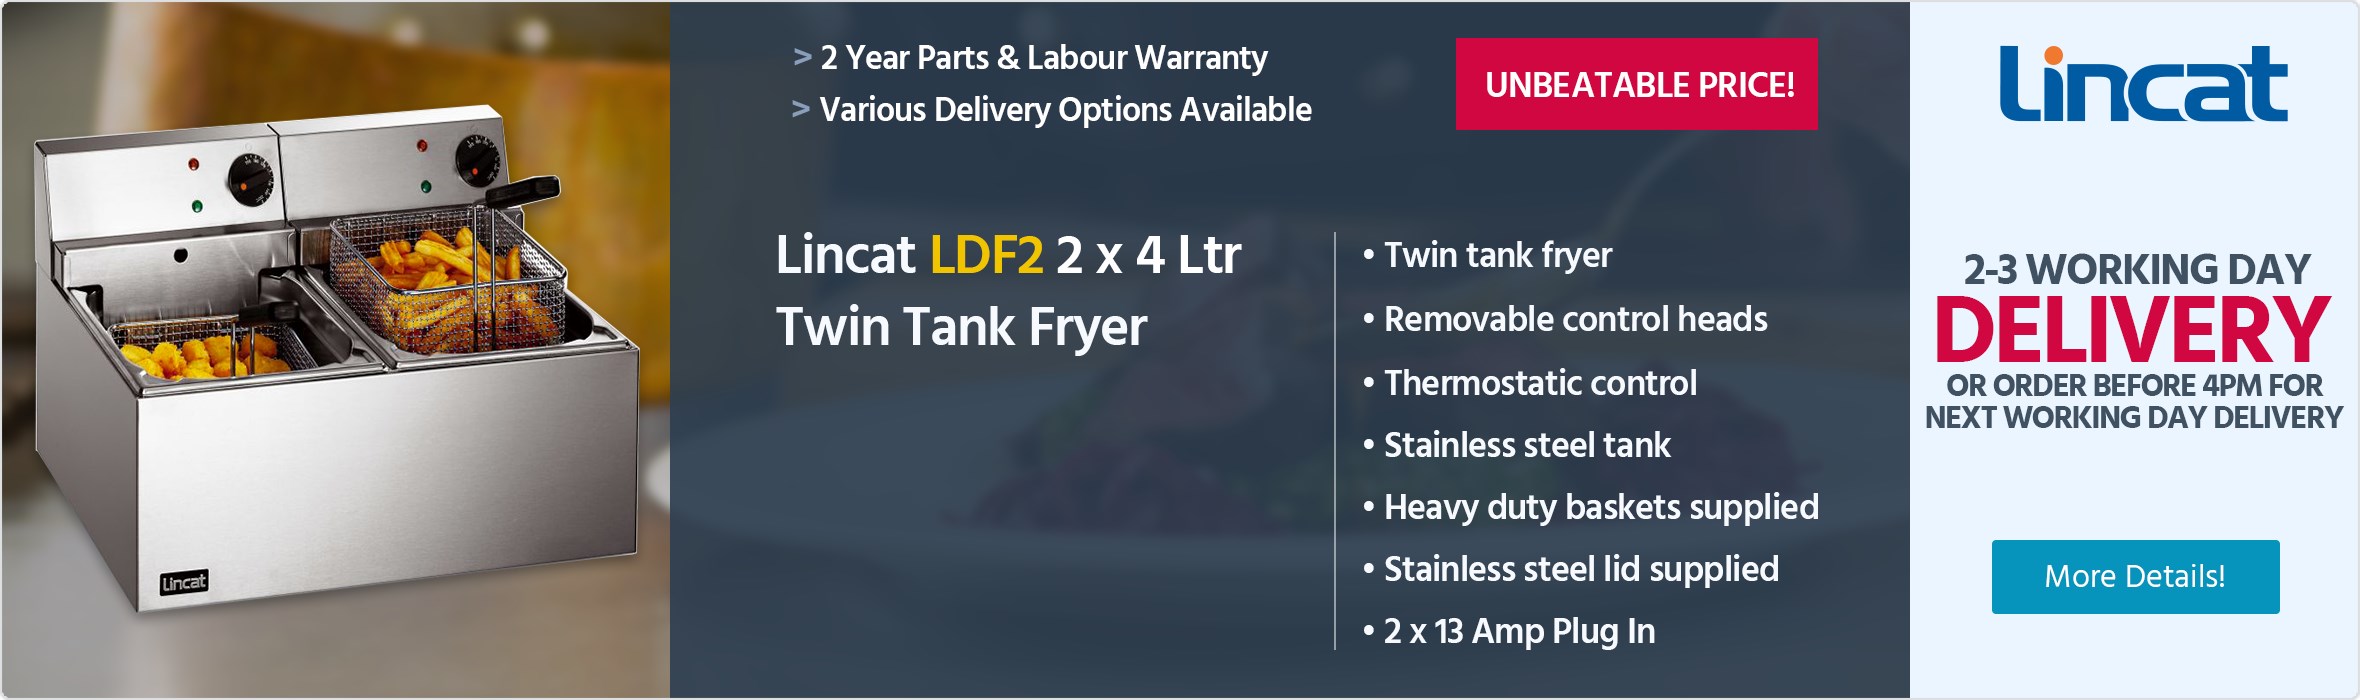 Lincat LDF2 2 x 4 Ltr Twin Tank General Purpose Fryer